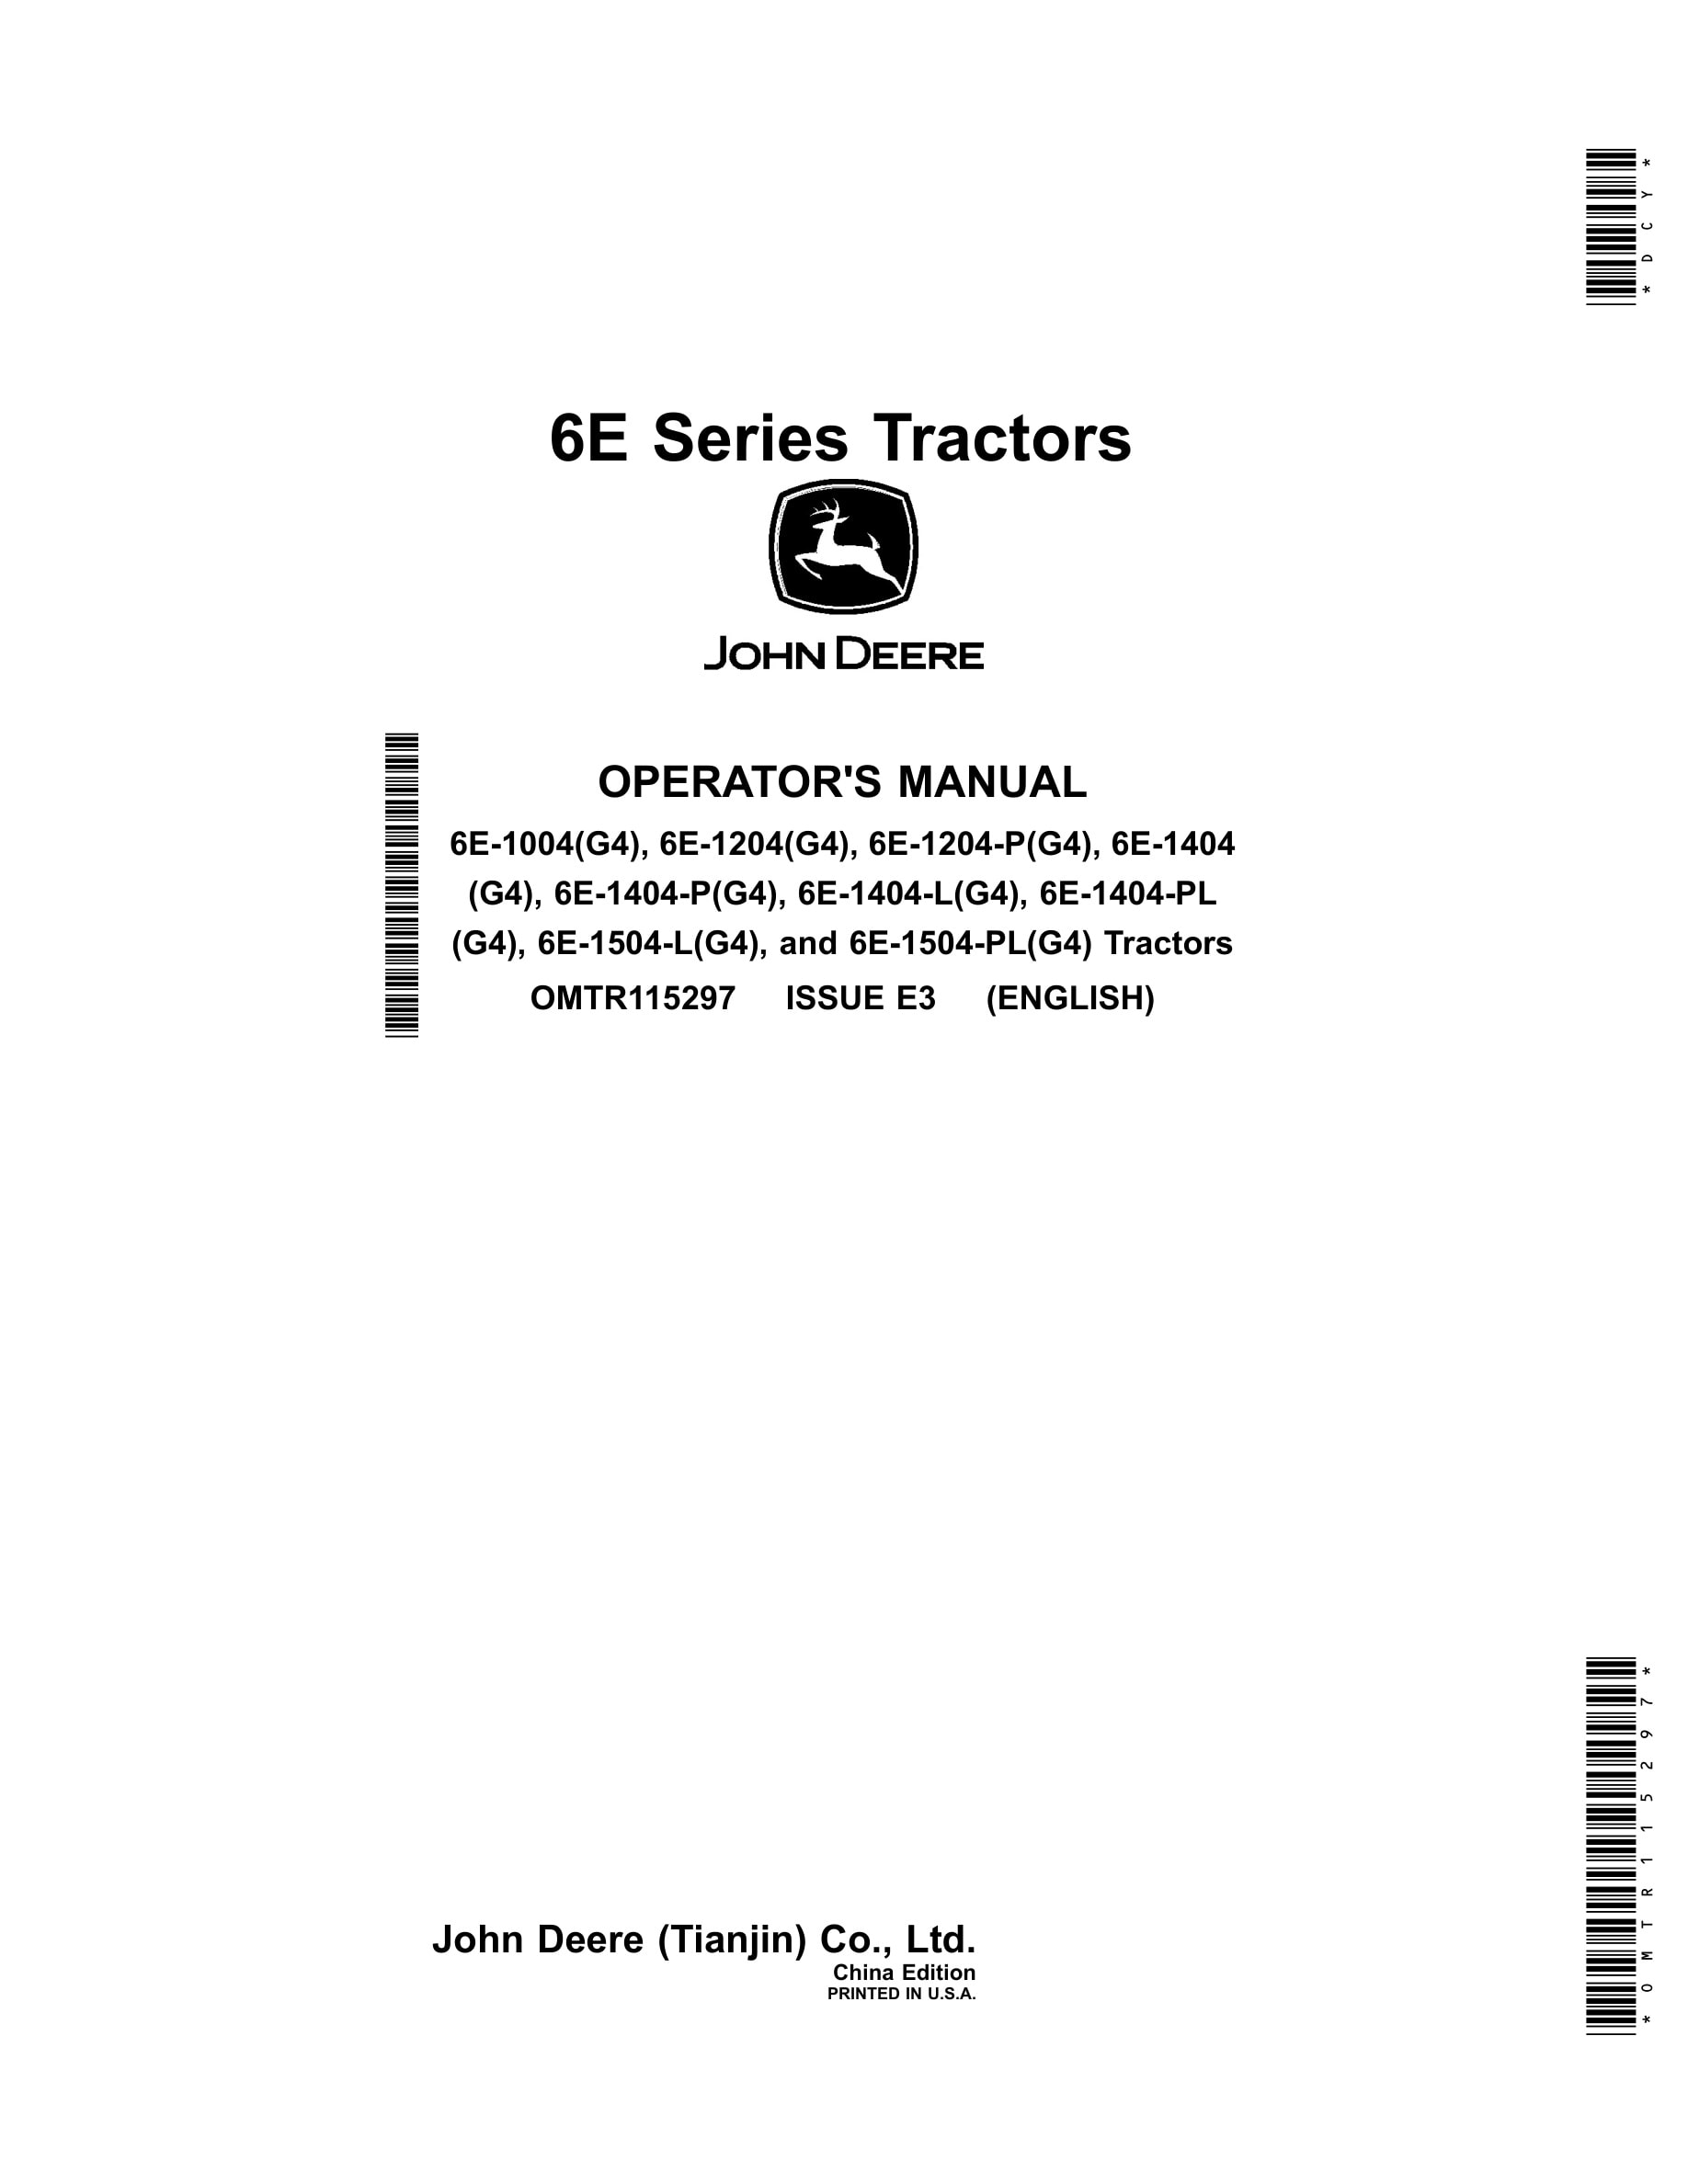 John Deere 6e-1004(g4), 6e-1204(g4), 6e-1204 Operator Manuals OMTR115297-1